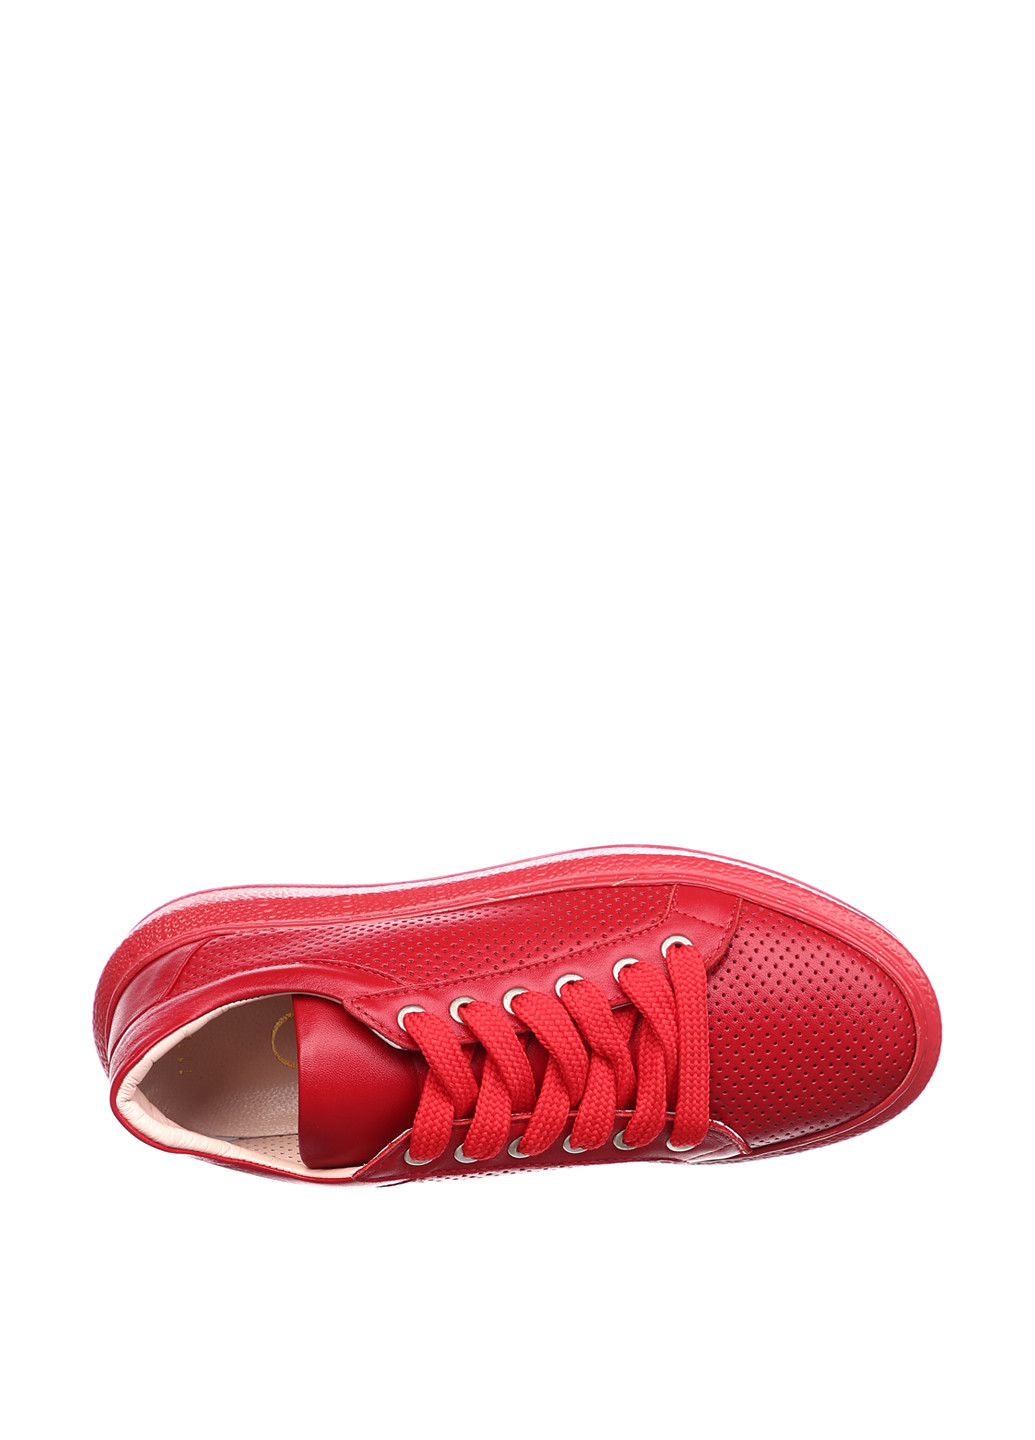 Красные демисезонные кроссовки Aquamarine